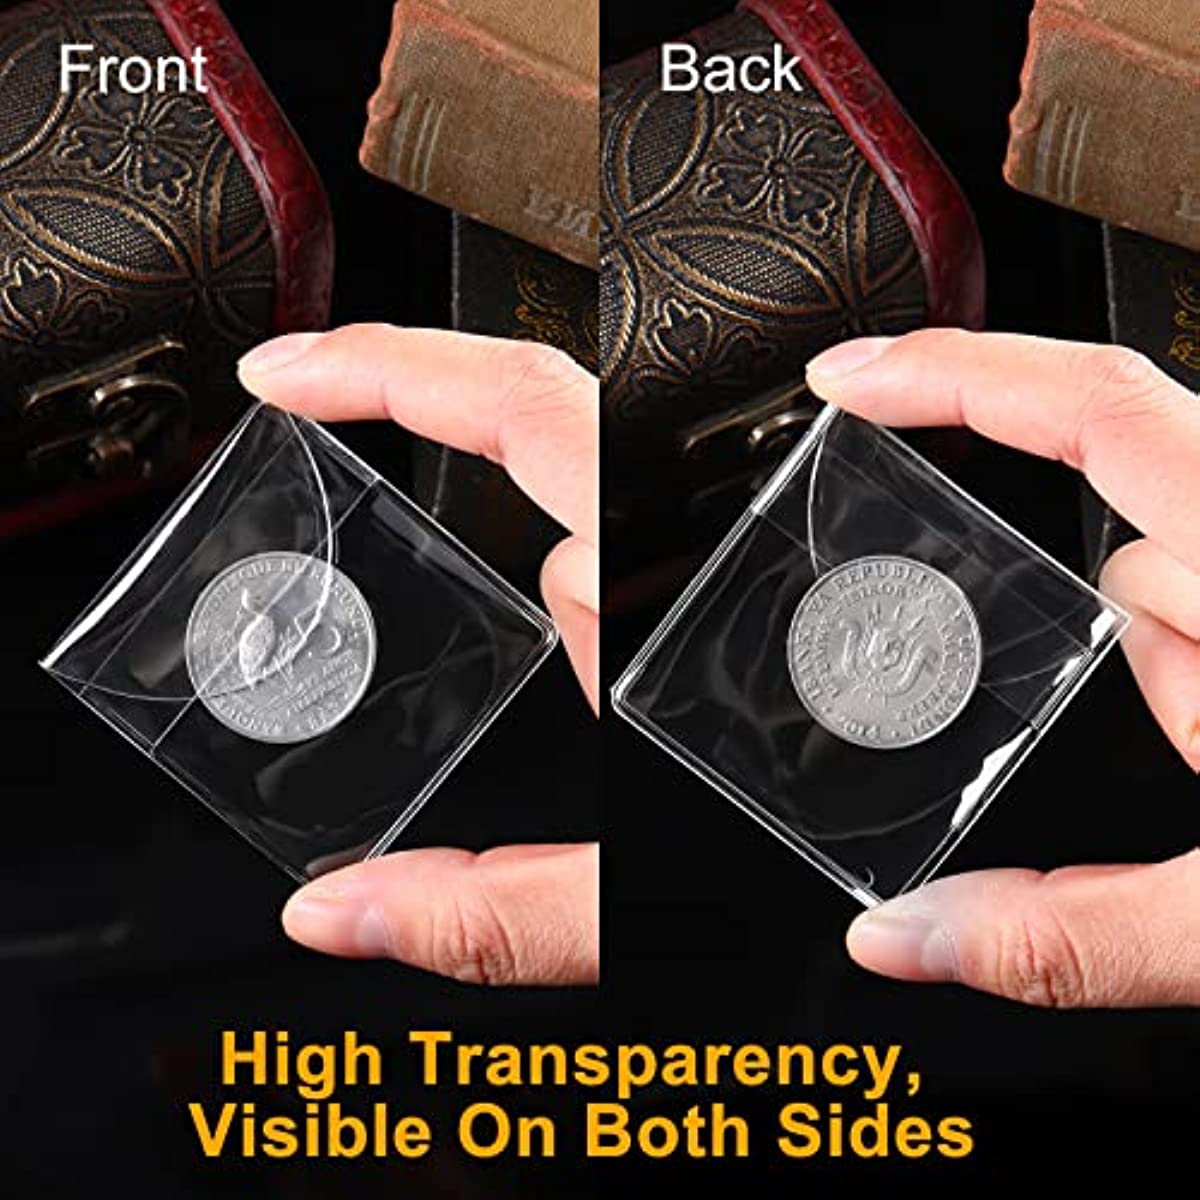 Numismatica: proteggi le tue monete, scatole trasparenti per monete